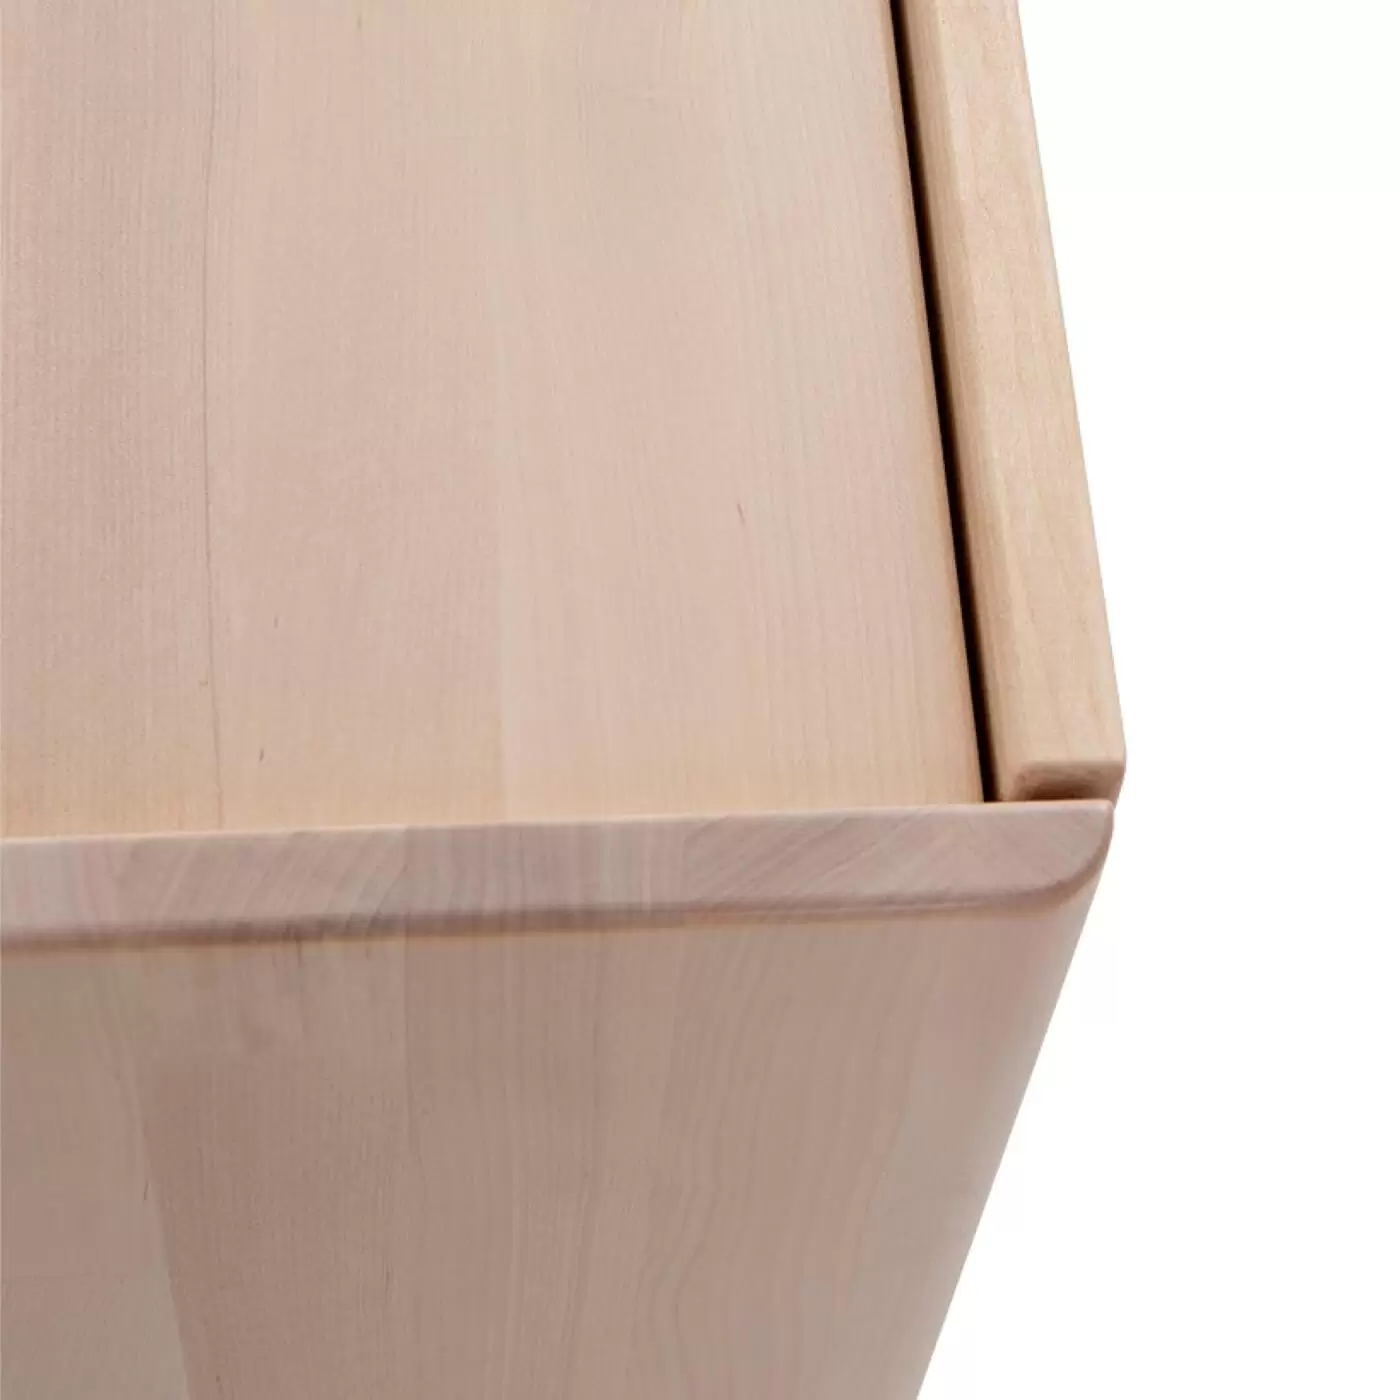 Komoda drewniana nowoczesna LENNU. Fragment rogu skandynawskiego mebla z litego drewna brzozy ręcznie robionego